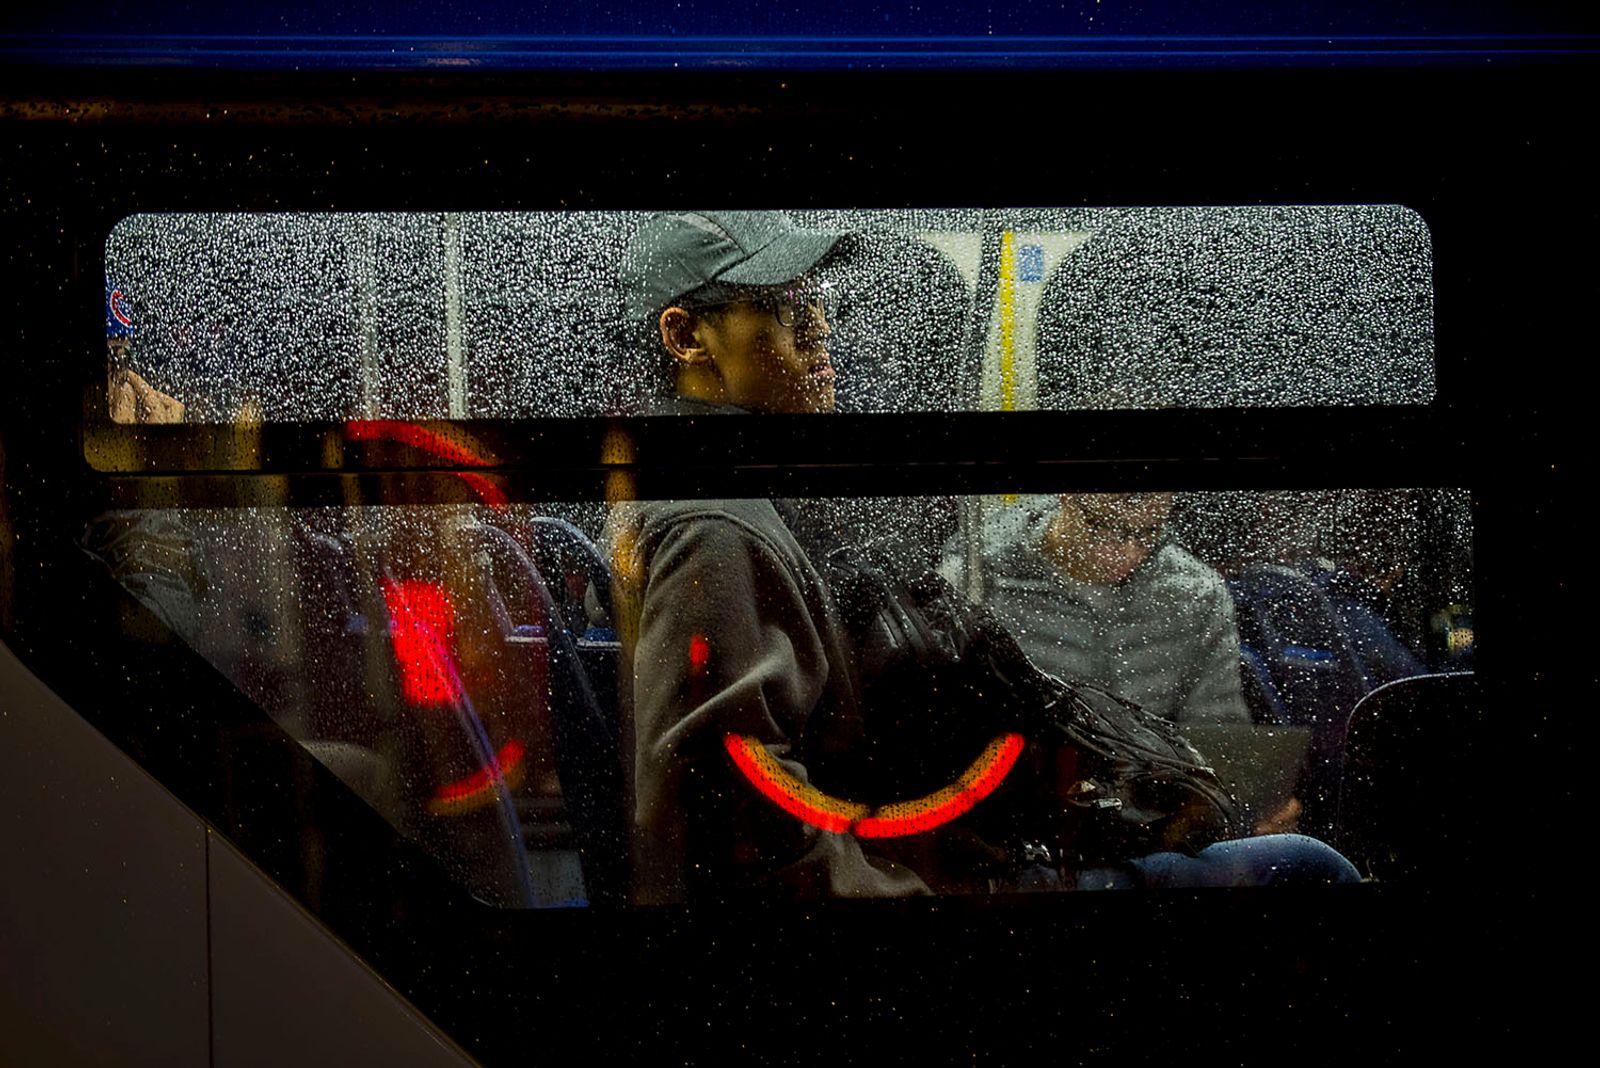 © Steven Edson - Evening bus ride in the rain. Cambridge, MA.